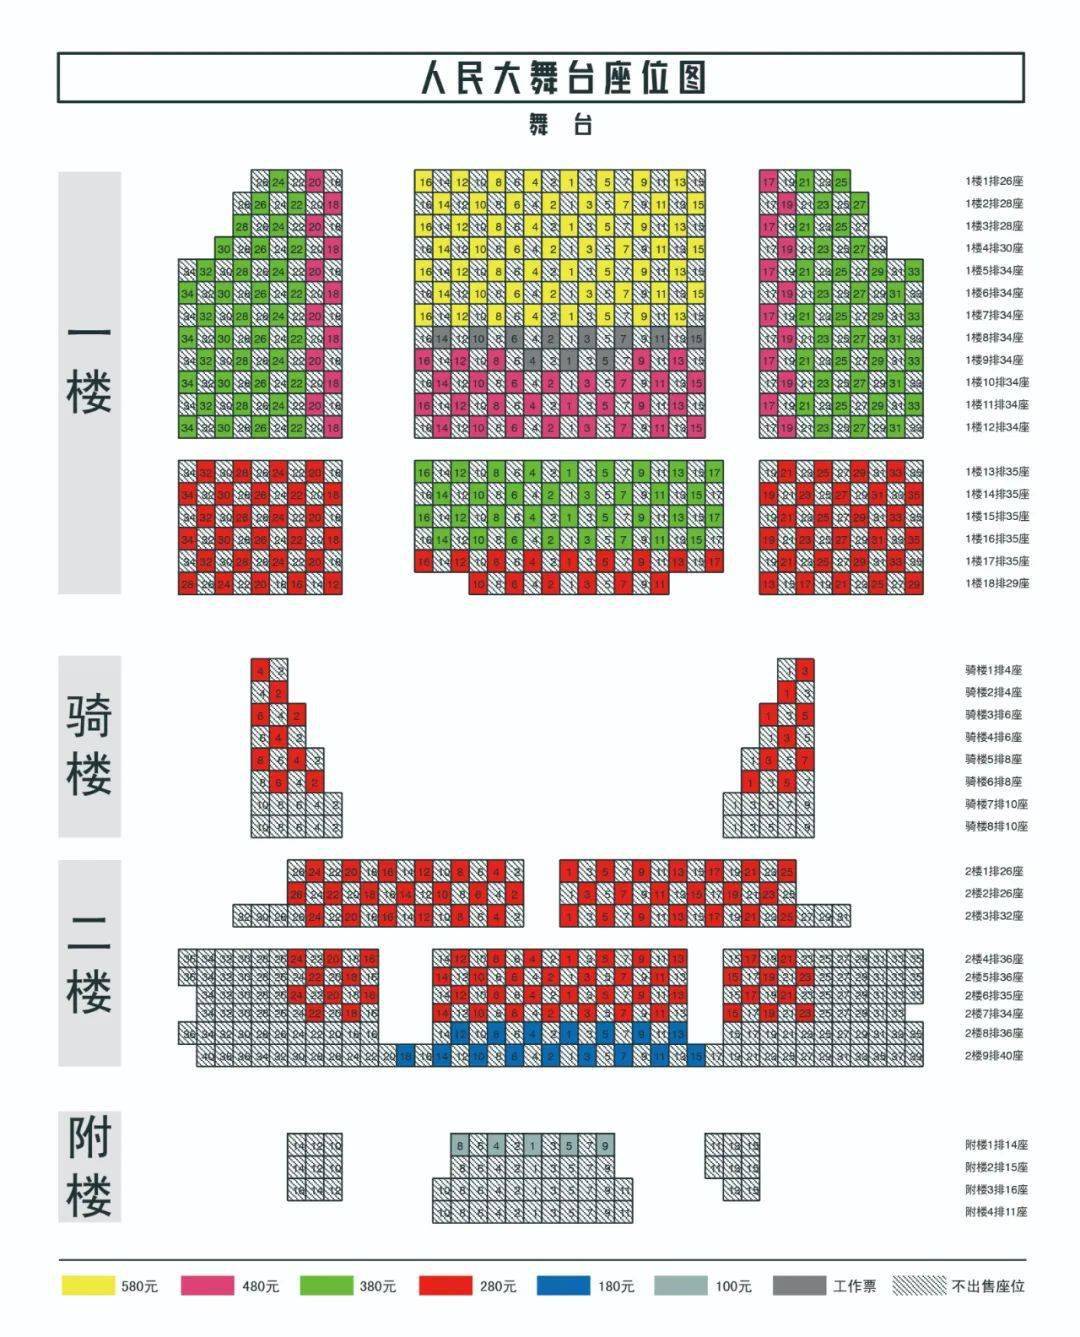 演出地点:上海·人民大舞台开票时间:2020年6月10日晚18:00开票平台